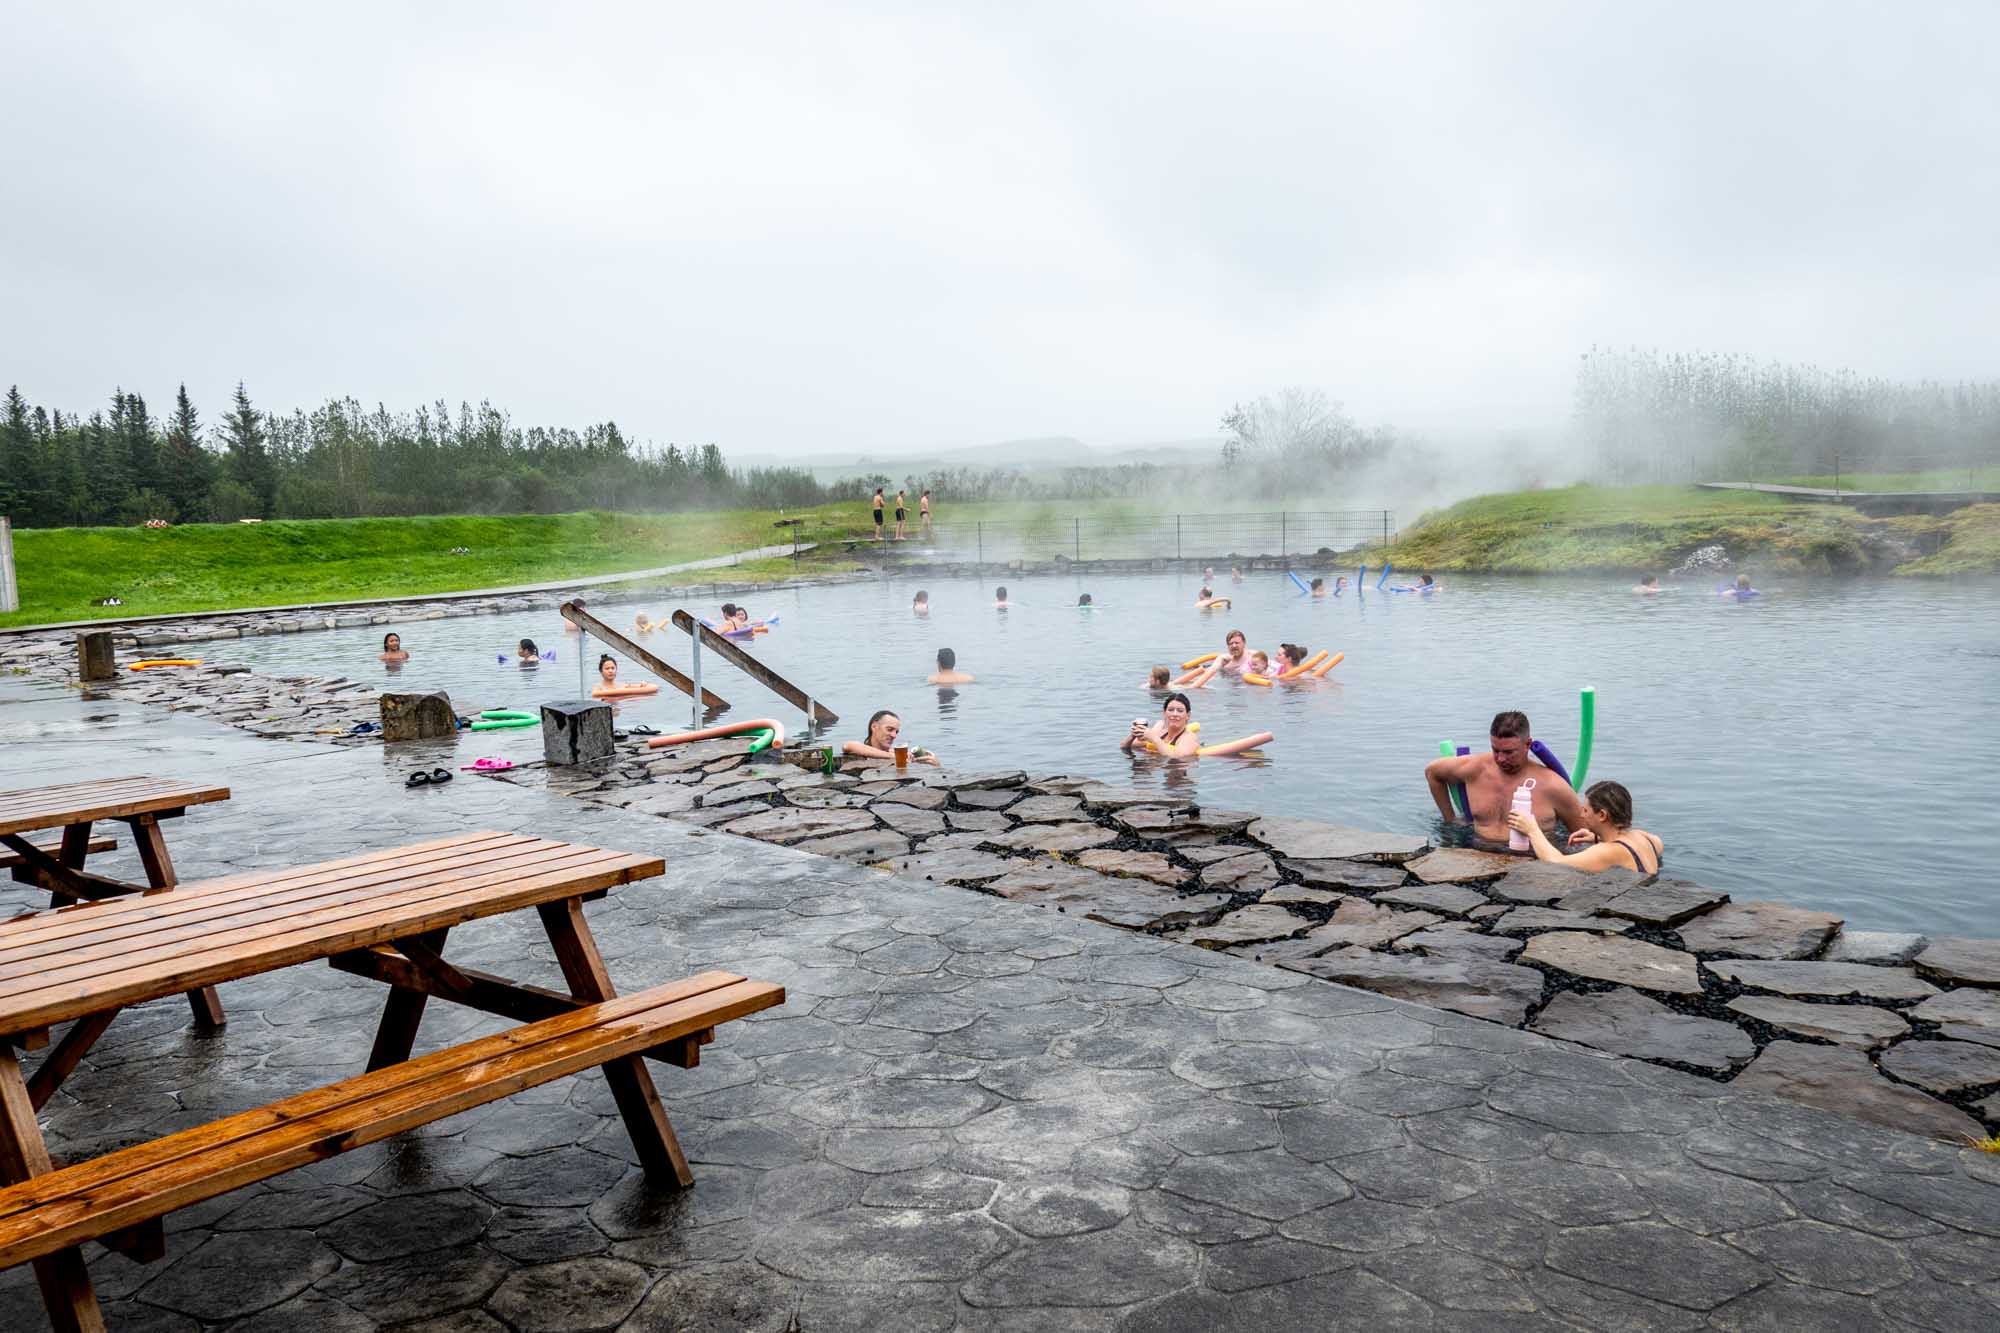 People in water at hot springs